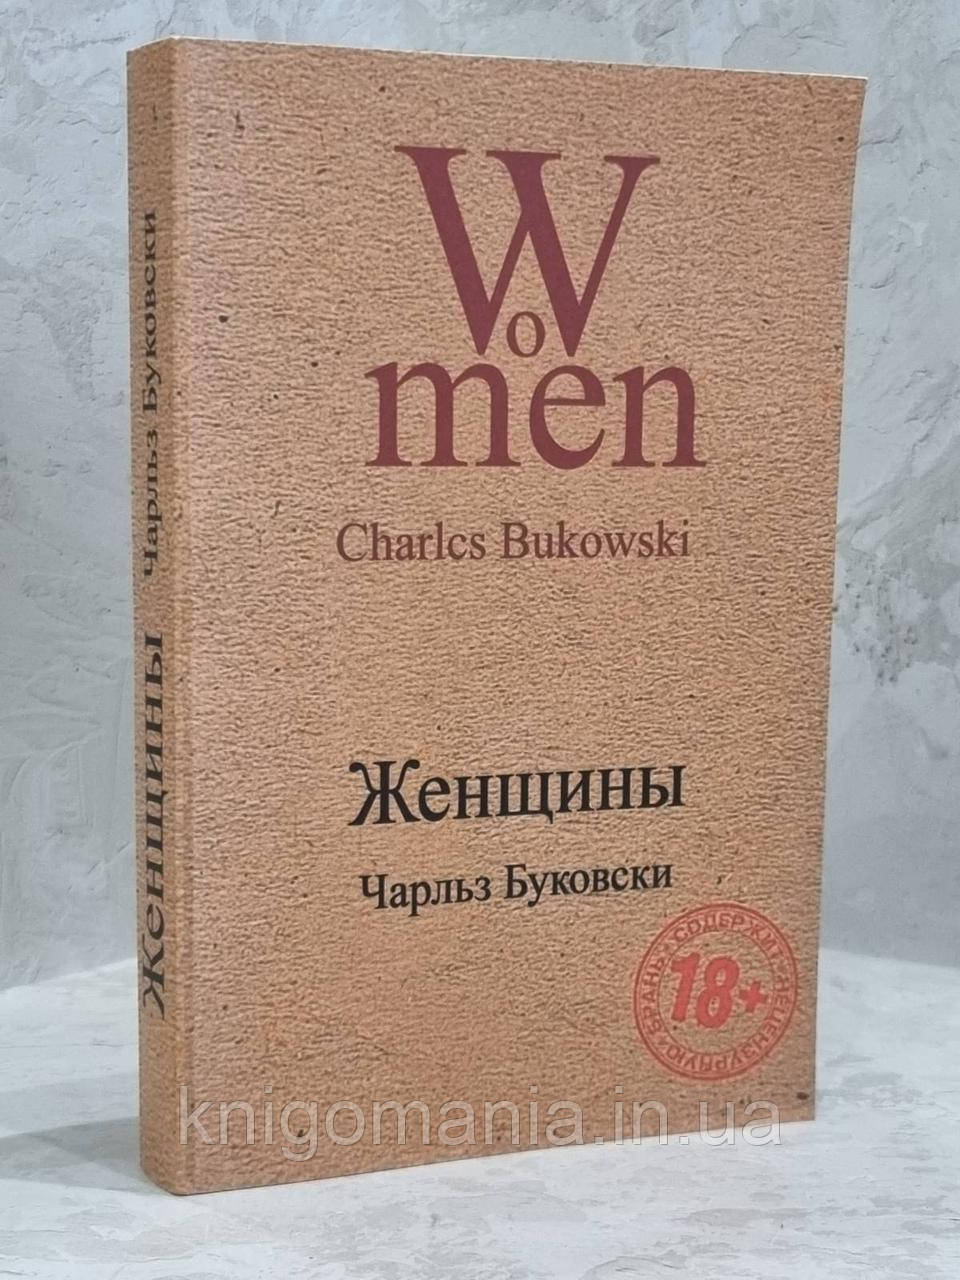 Книга "Жінки" Чарльз Буковскі